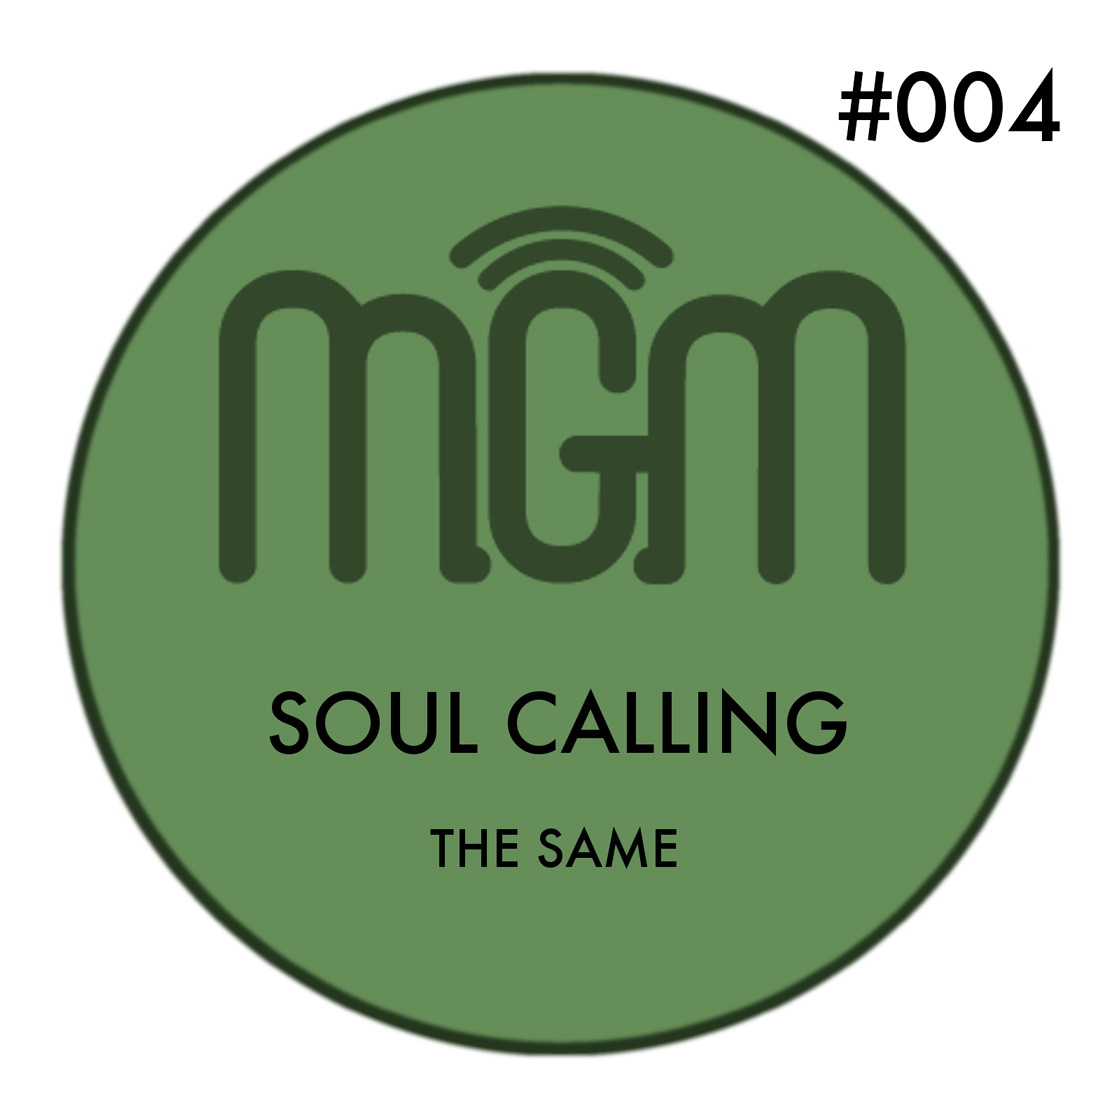 Descarca The SAME - Soul Calling